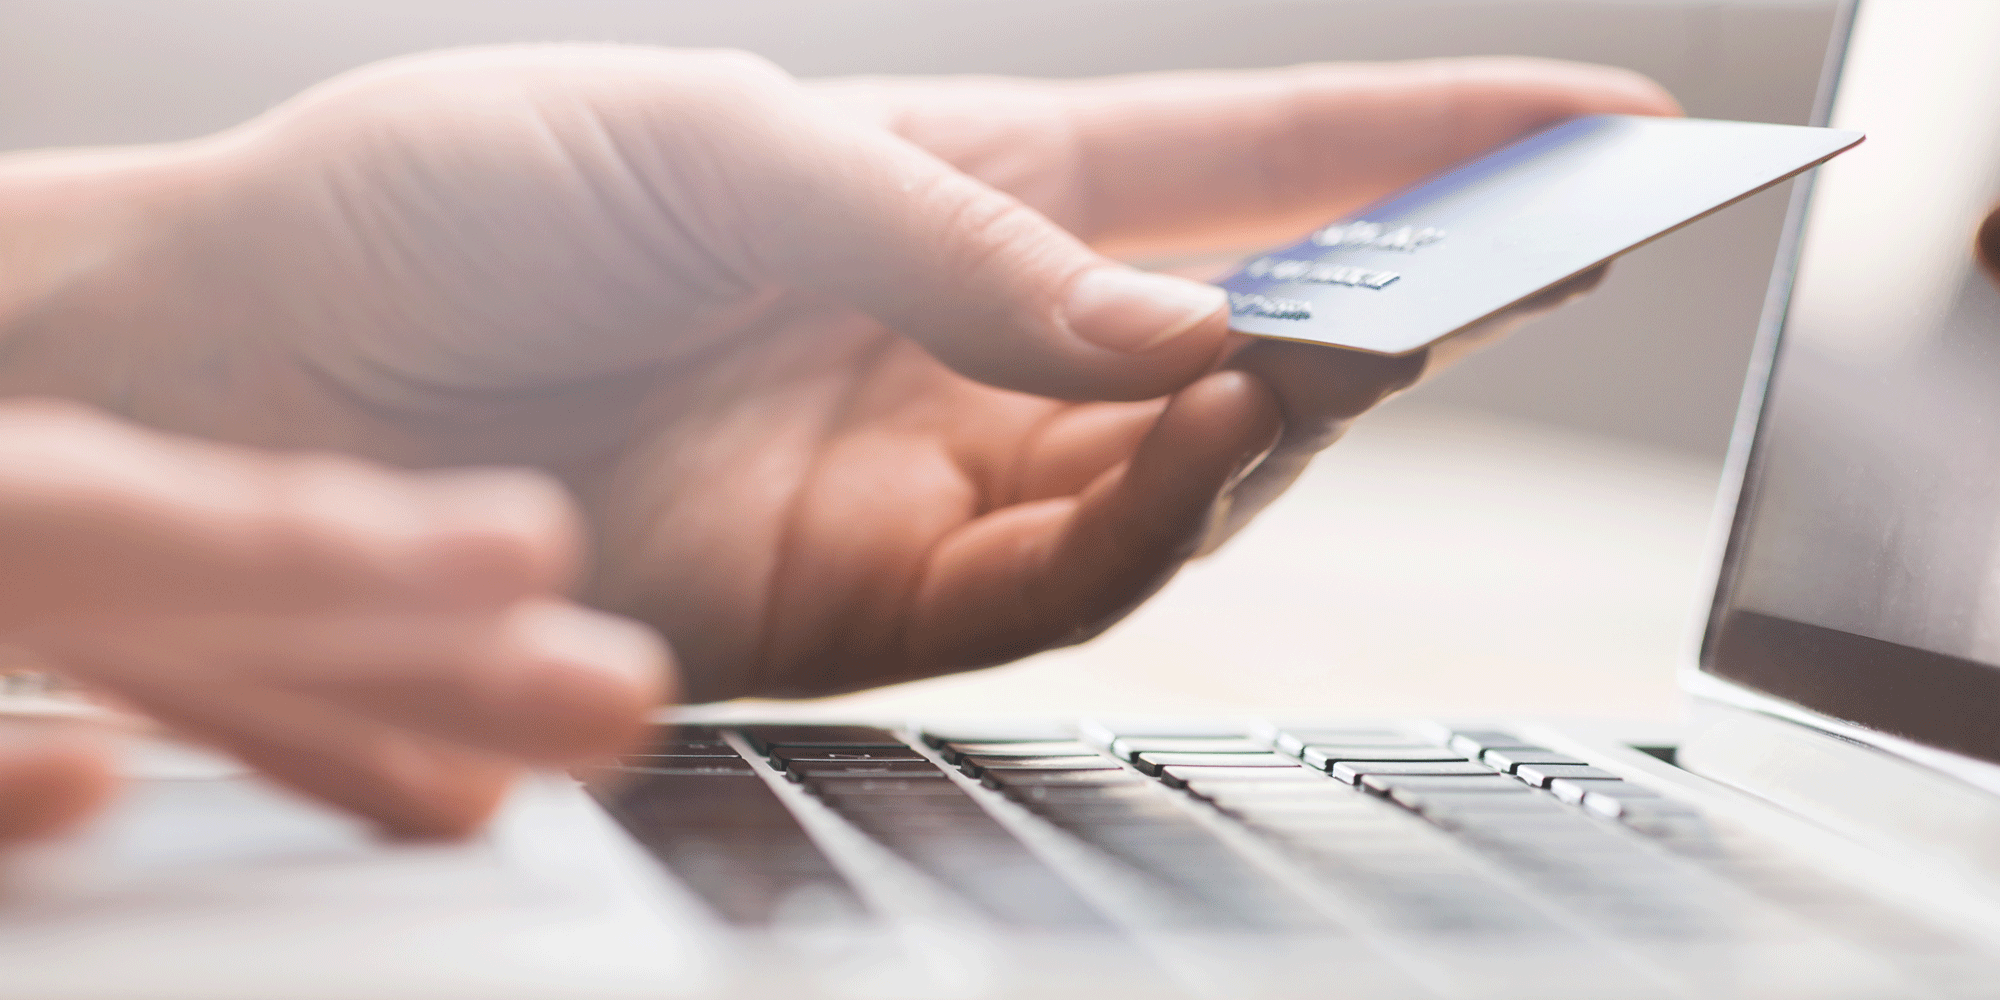 Uso de la tarjeta de crédito: Tips para usarla responsablemente